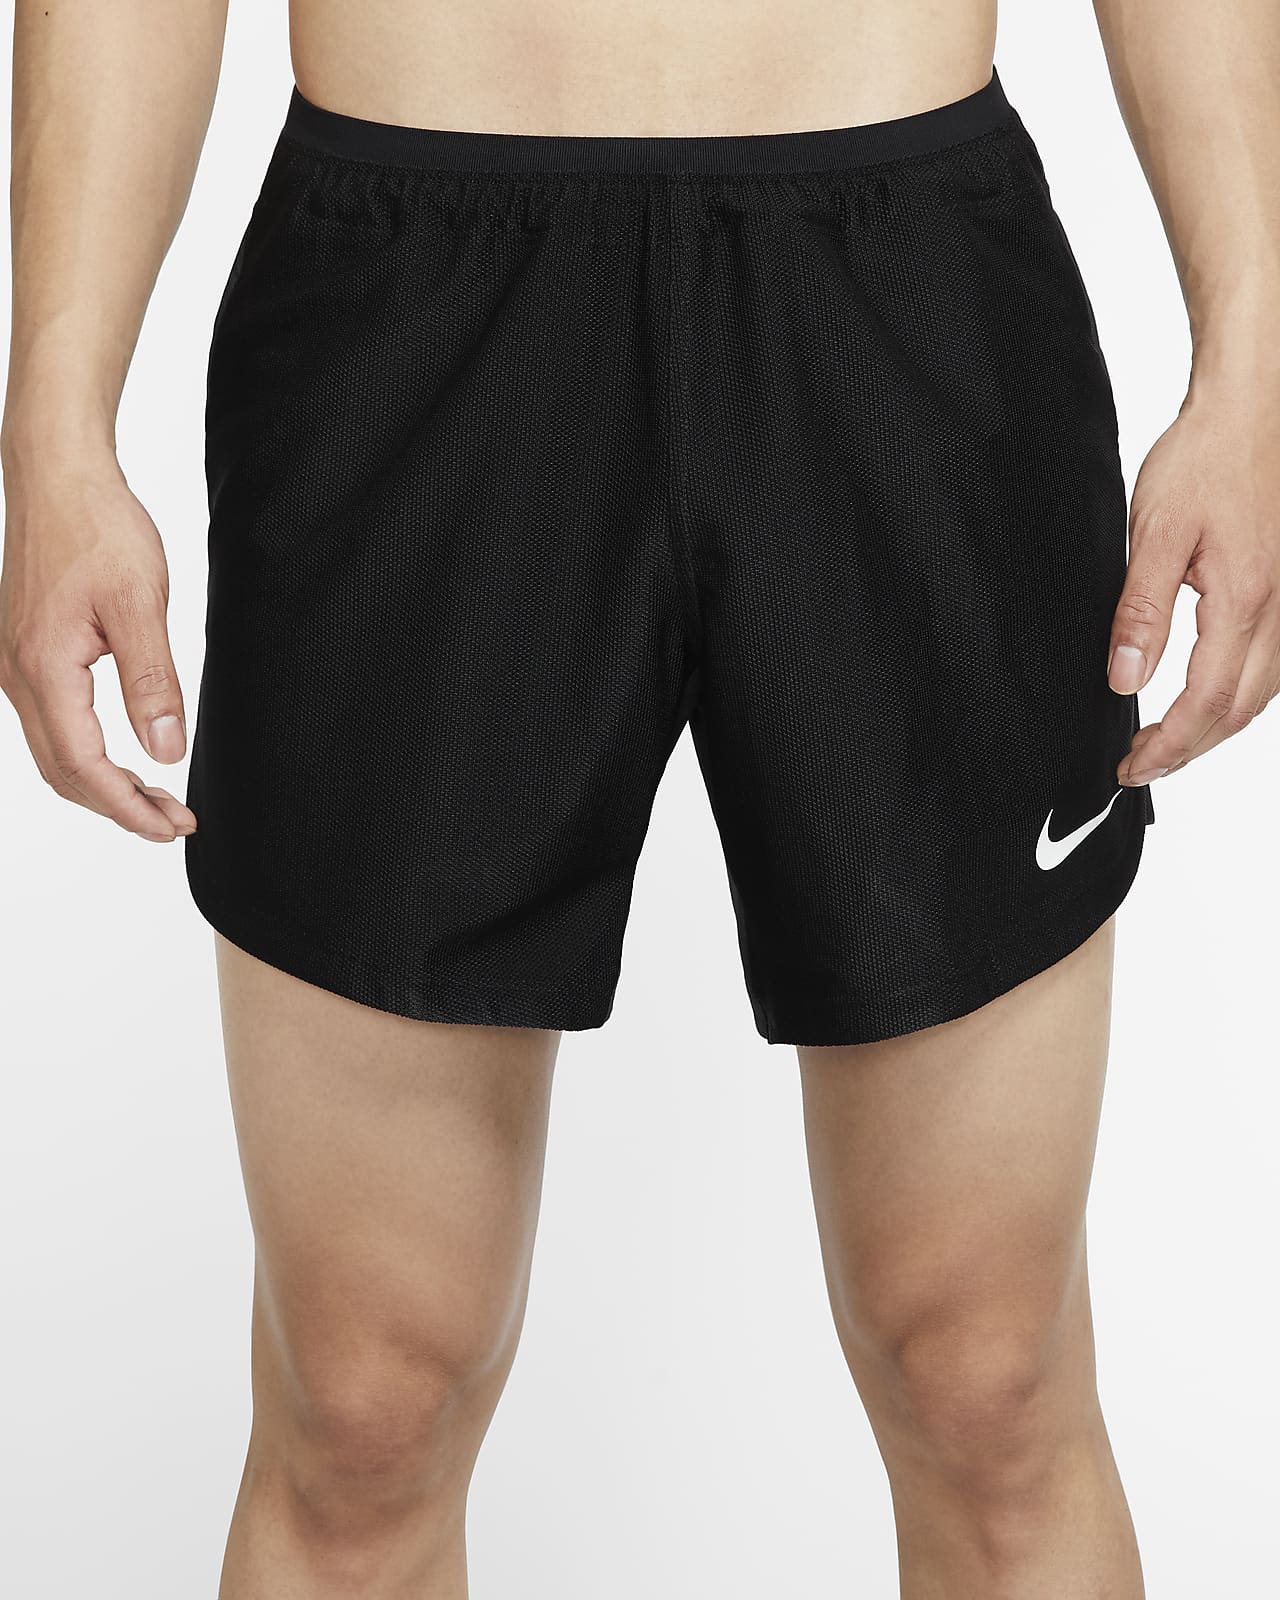 Nike Pro Men's Shorts. Nike SA